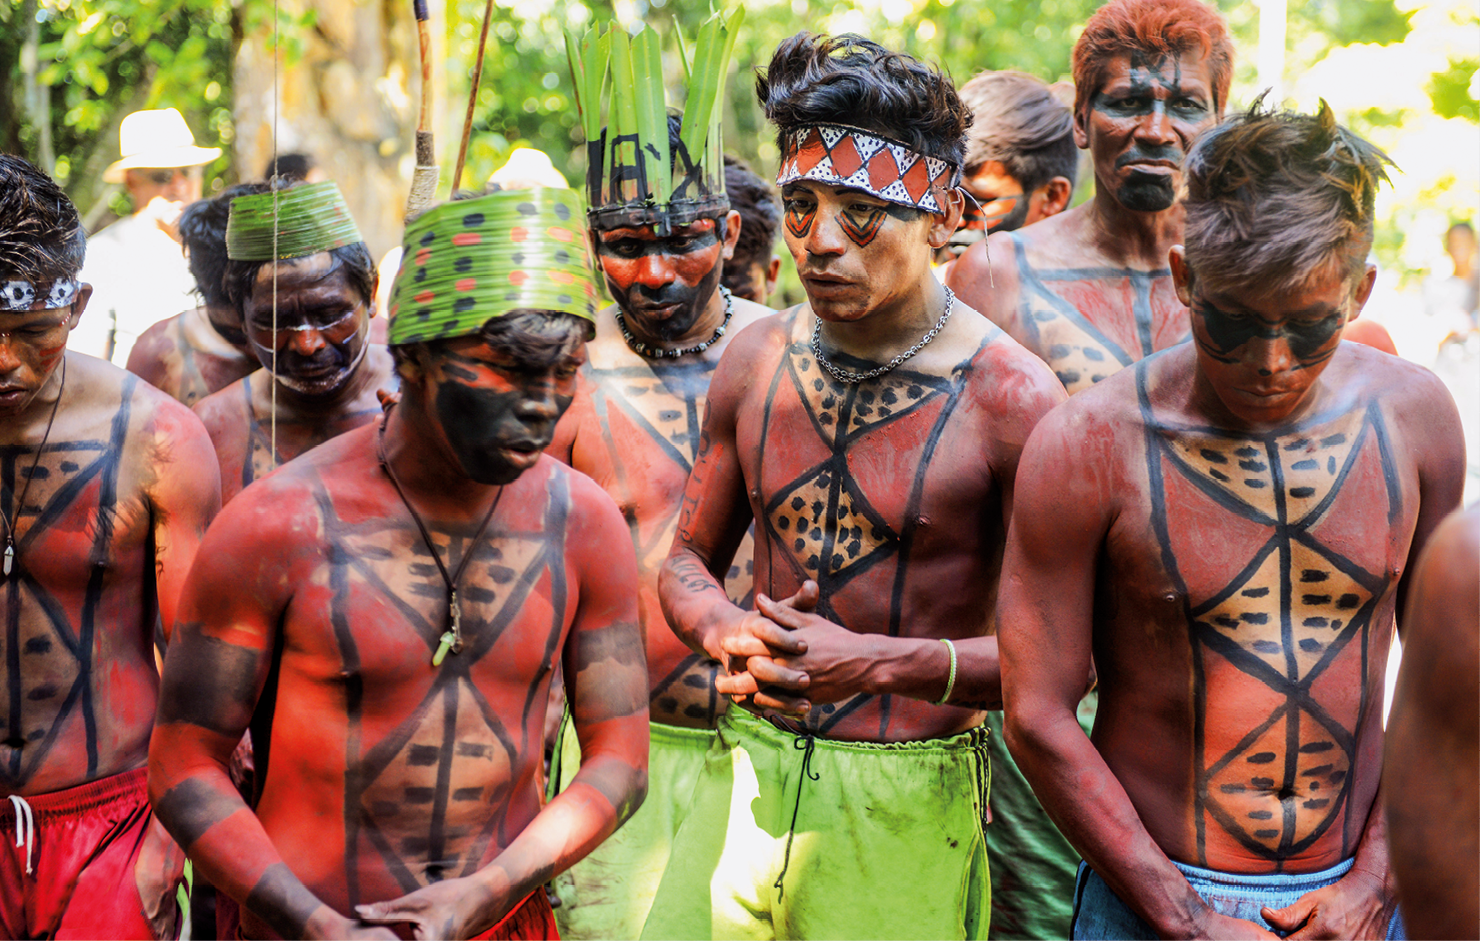 Fotografia. Homens indígenas com o torso nu, com pinturas corporais em tons de preto, vermelho e bege com formas geométricas. Alguns deles usam adereços na cabeça. Ao fundo há vegetação.